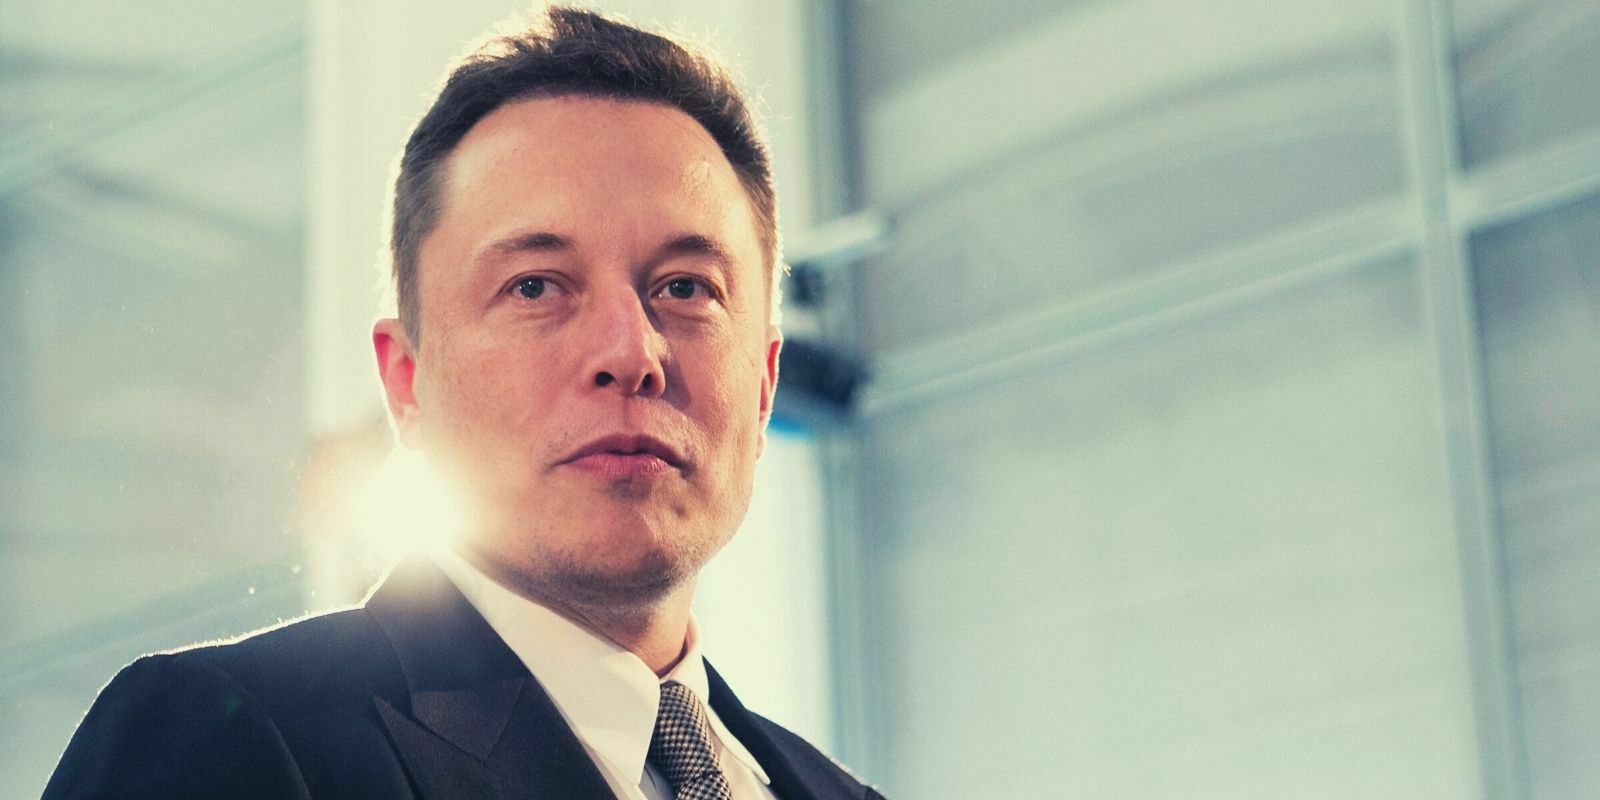 Des faux giveaways usurpant l'identité d'Elon Musk extorquent 580 000 dollars en bitcoins